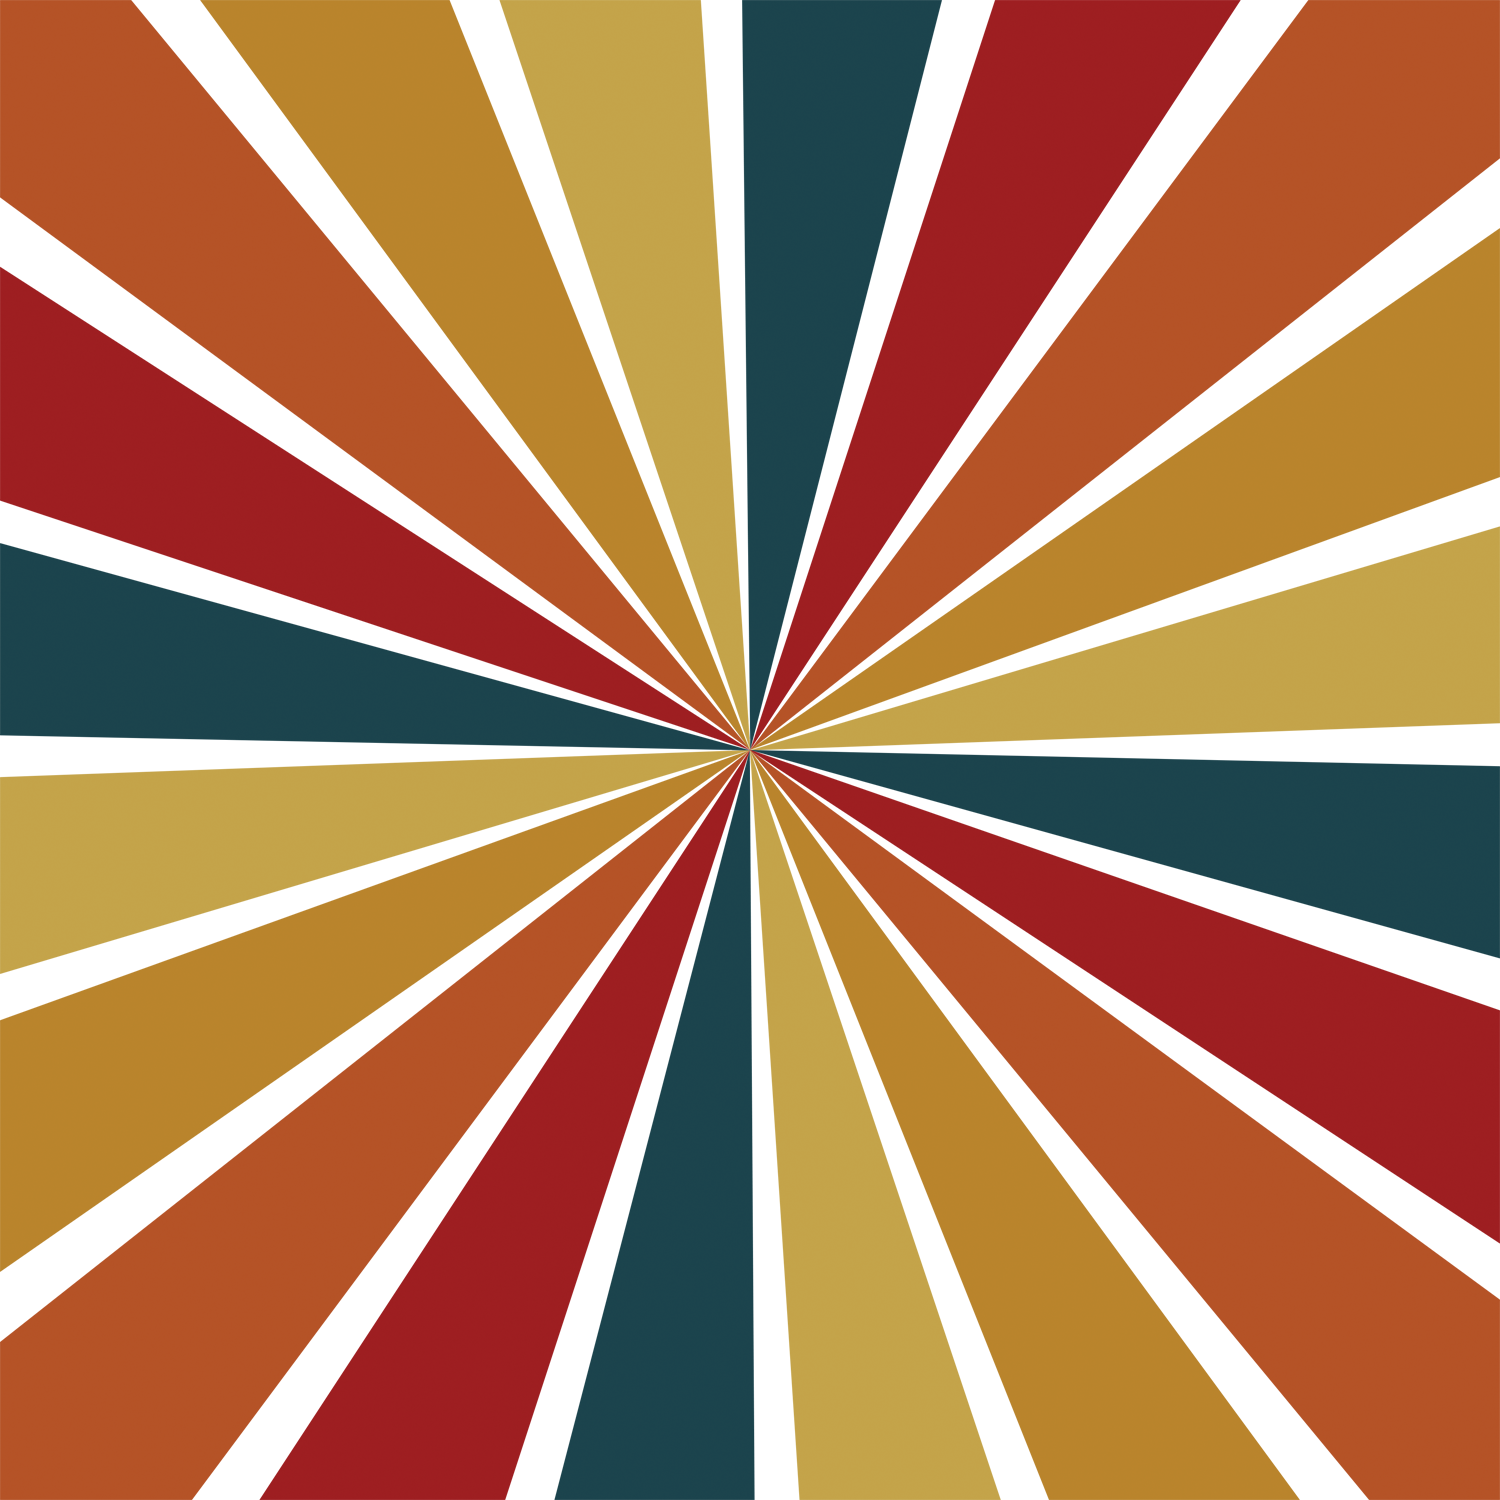 Retro sunburst, Sunburst background in retro colors